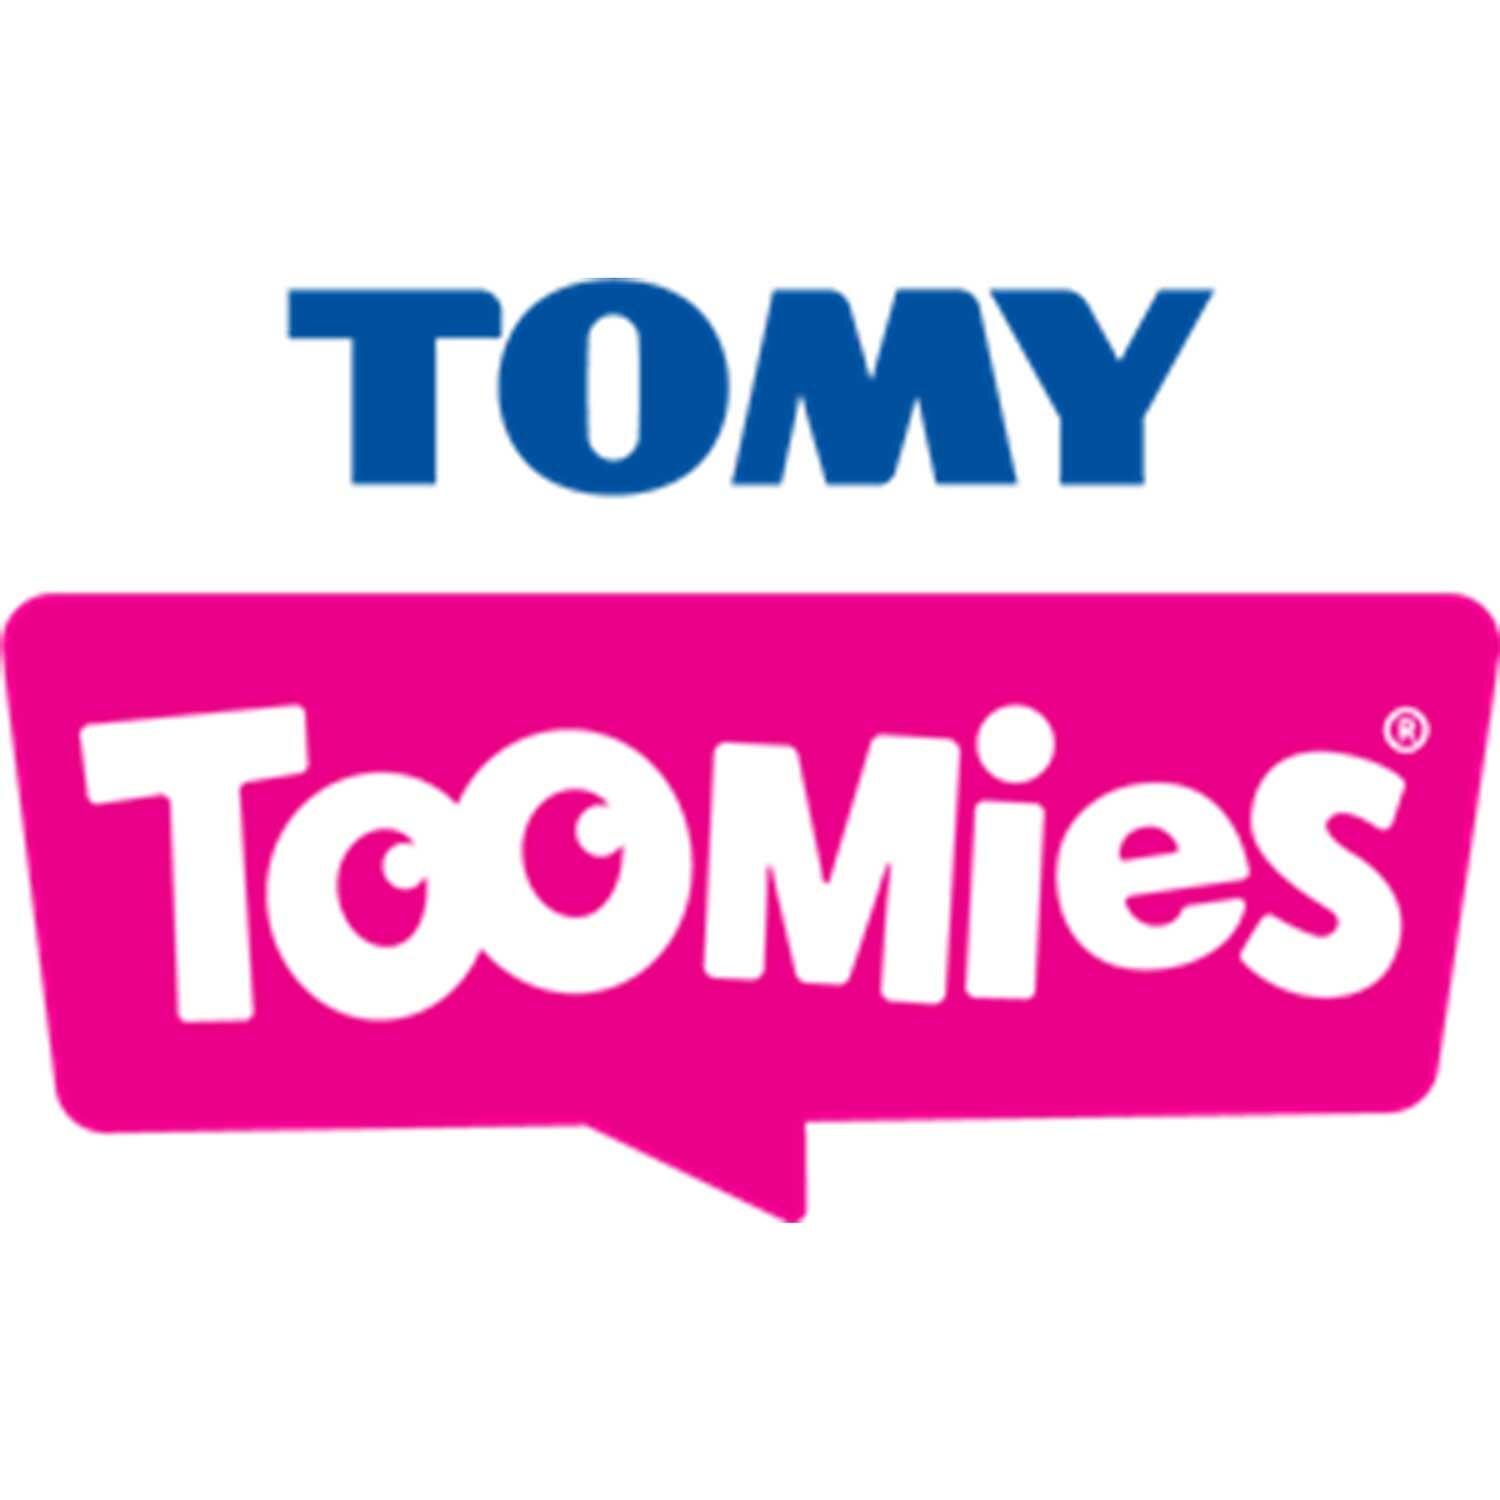 Tomy-Toomies